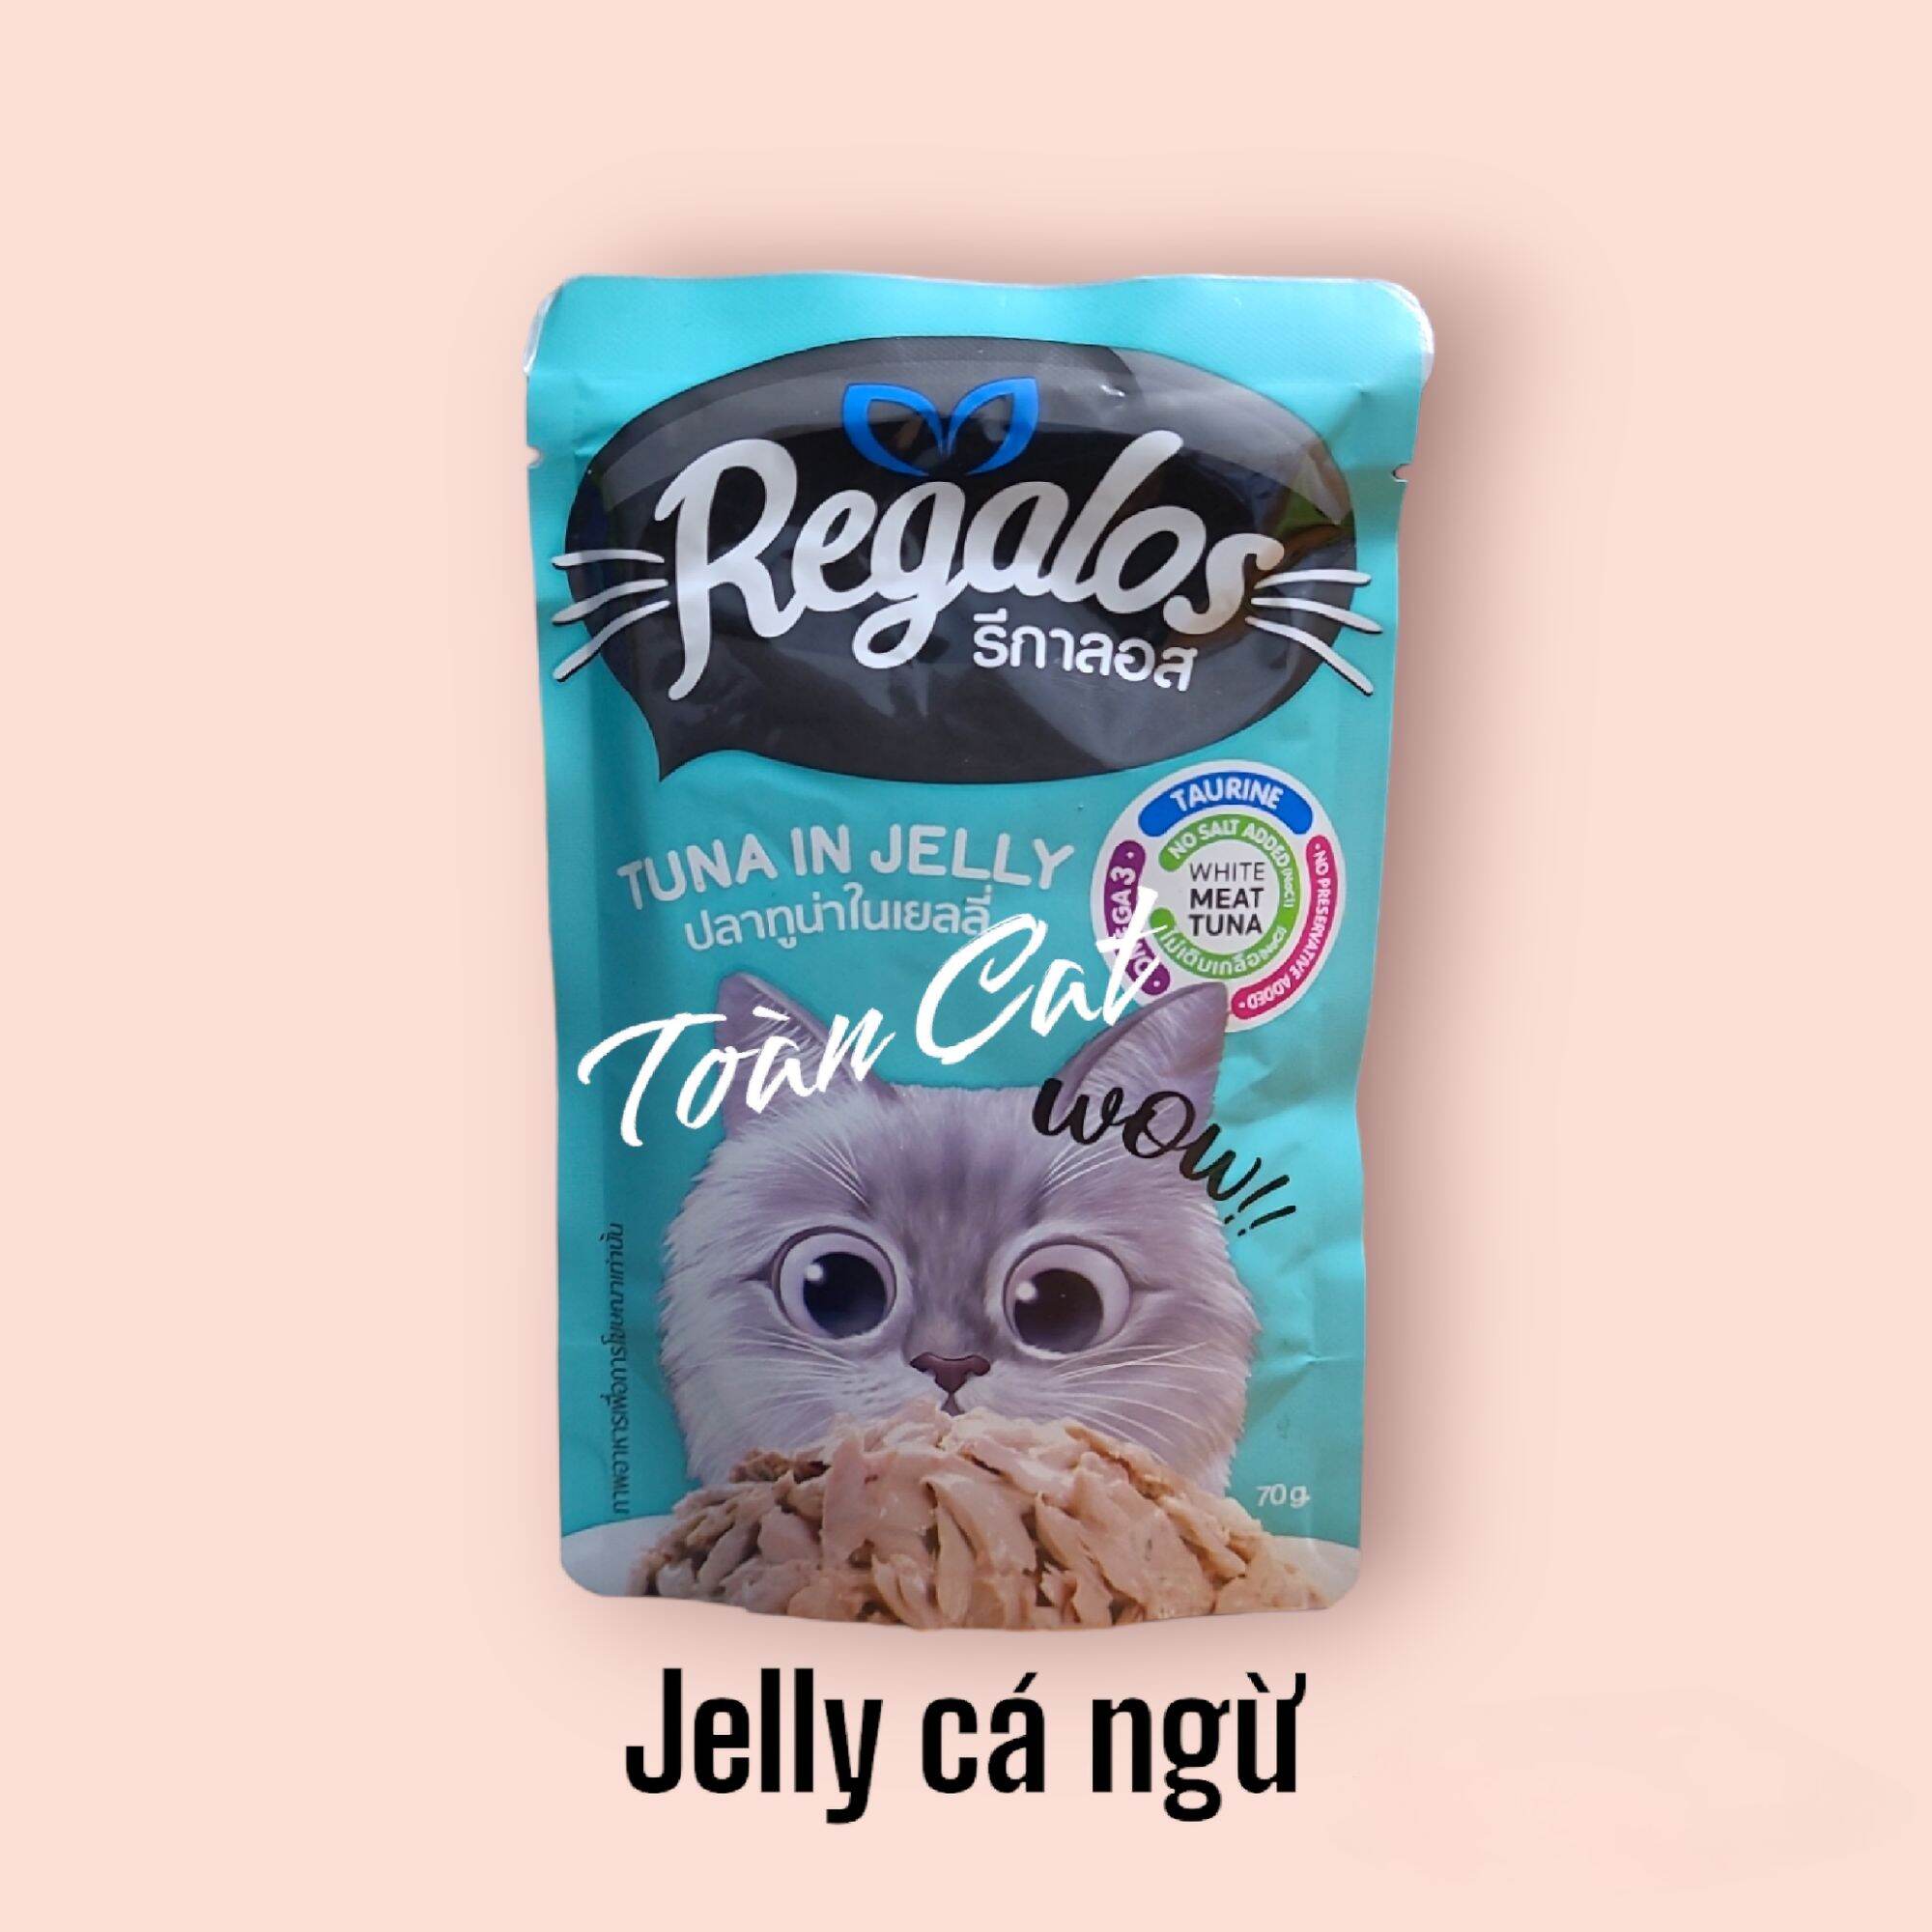 Pate Regalos 70g - Thức ăn ướt cho mèo mọi lứa tuổi